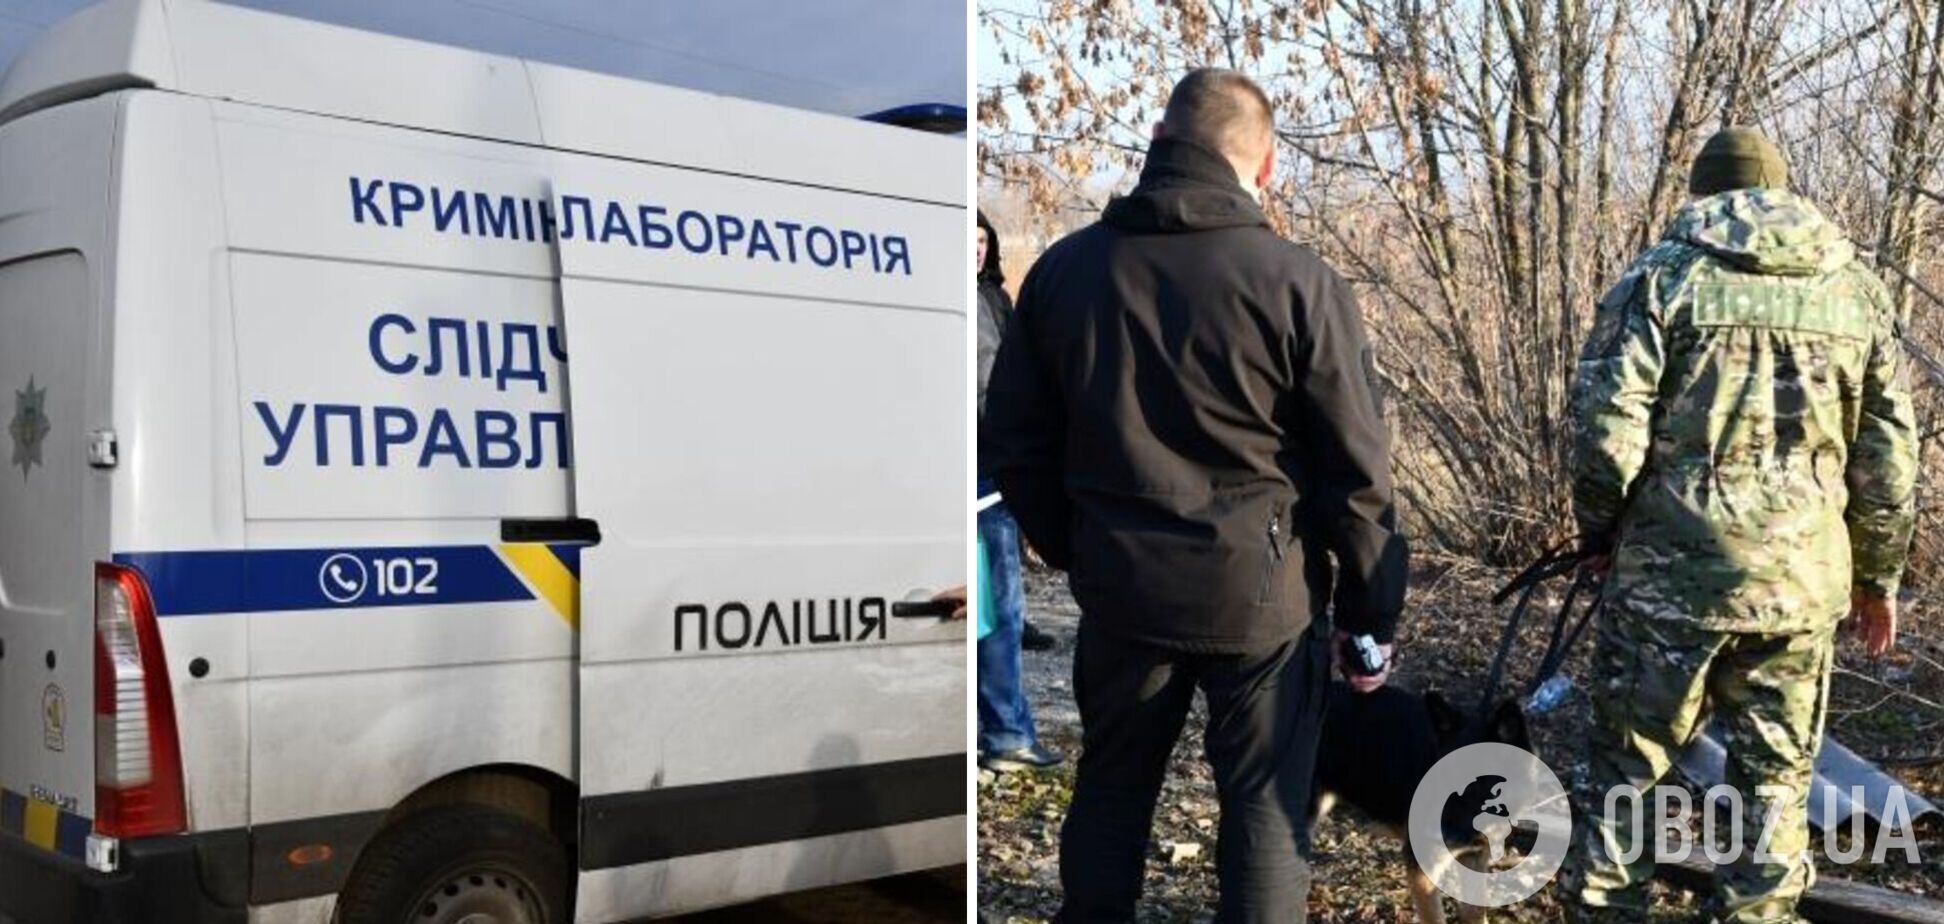 Изнасиловали и бросили в колодец: на Луганщине мужчину забили до смерти. Фото и видео